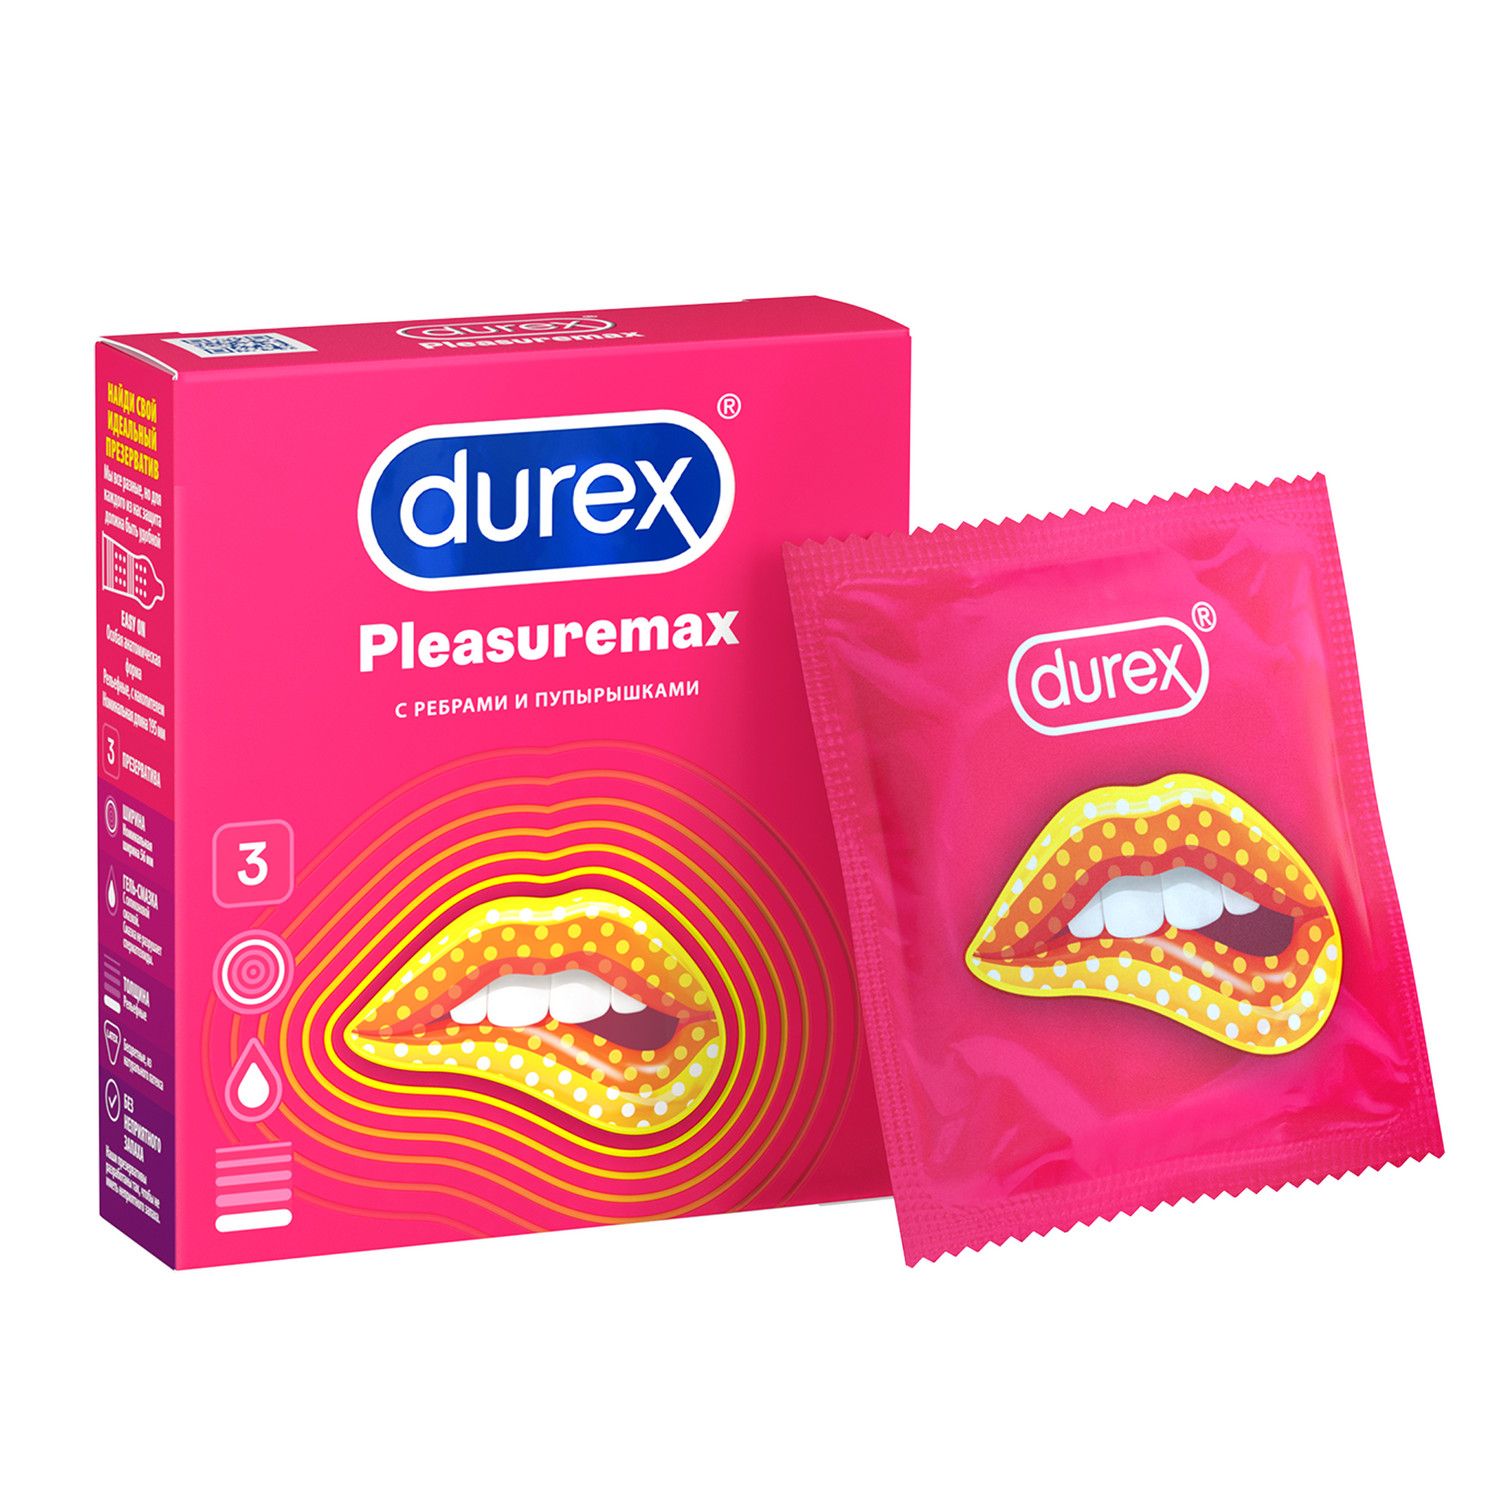 Durex® Pleasuremax – это ребристые презервативы с точечной структурой для д...